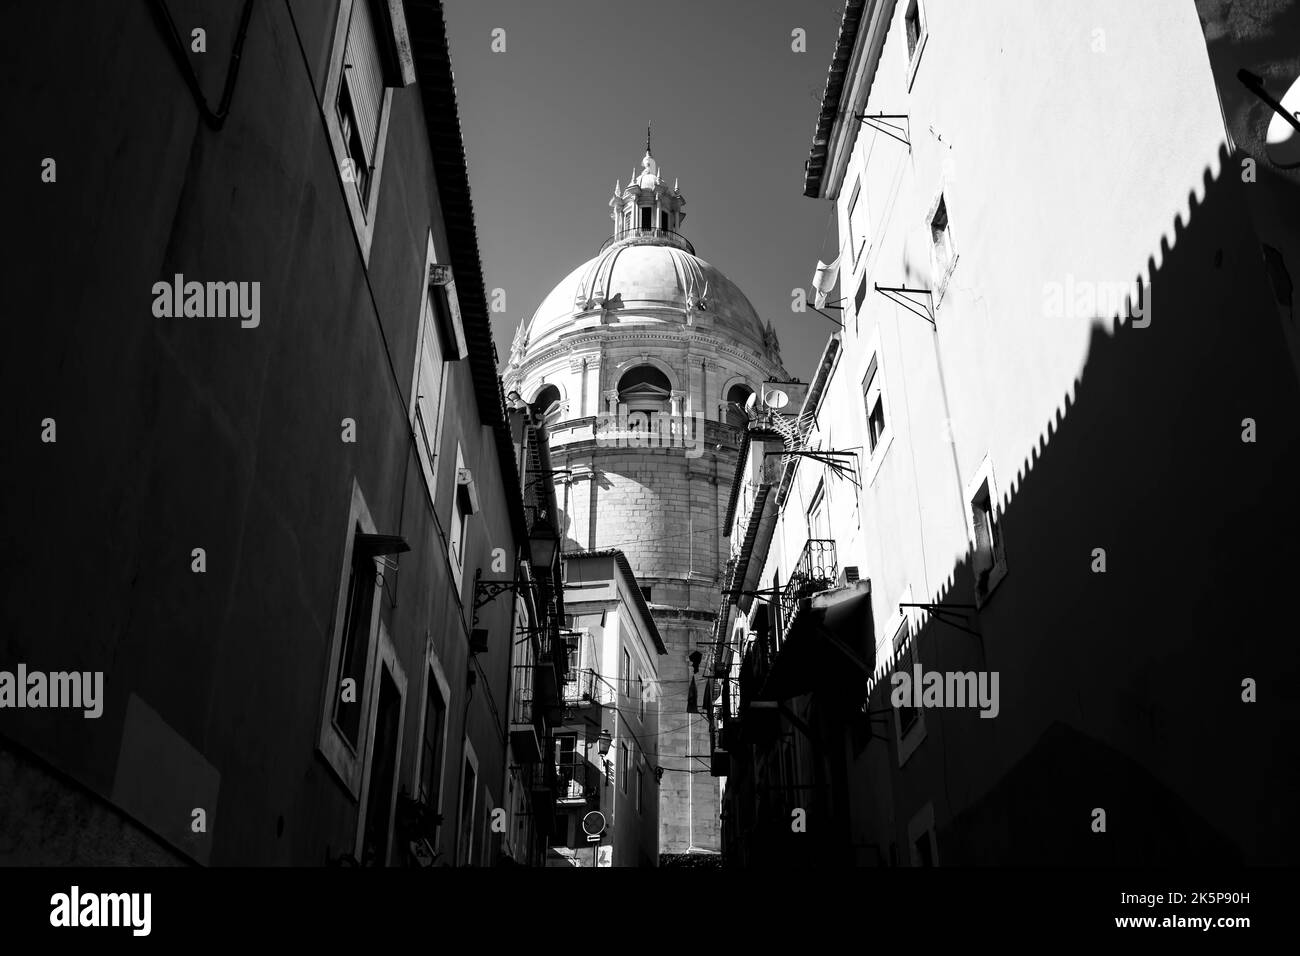 Eine der Straßen des Alfama-Viertels, die Kirche Santa Engracia, das alte Zentrum von Lissabon. Schwarzweiß-Foto. Stockfoto